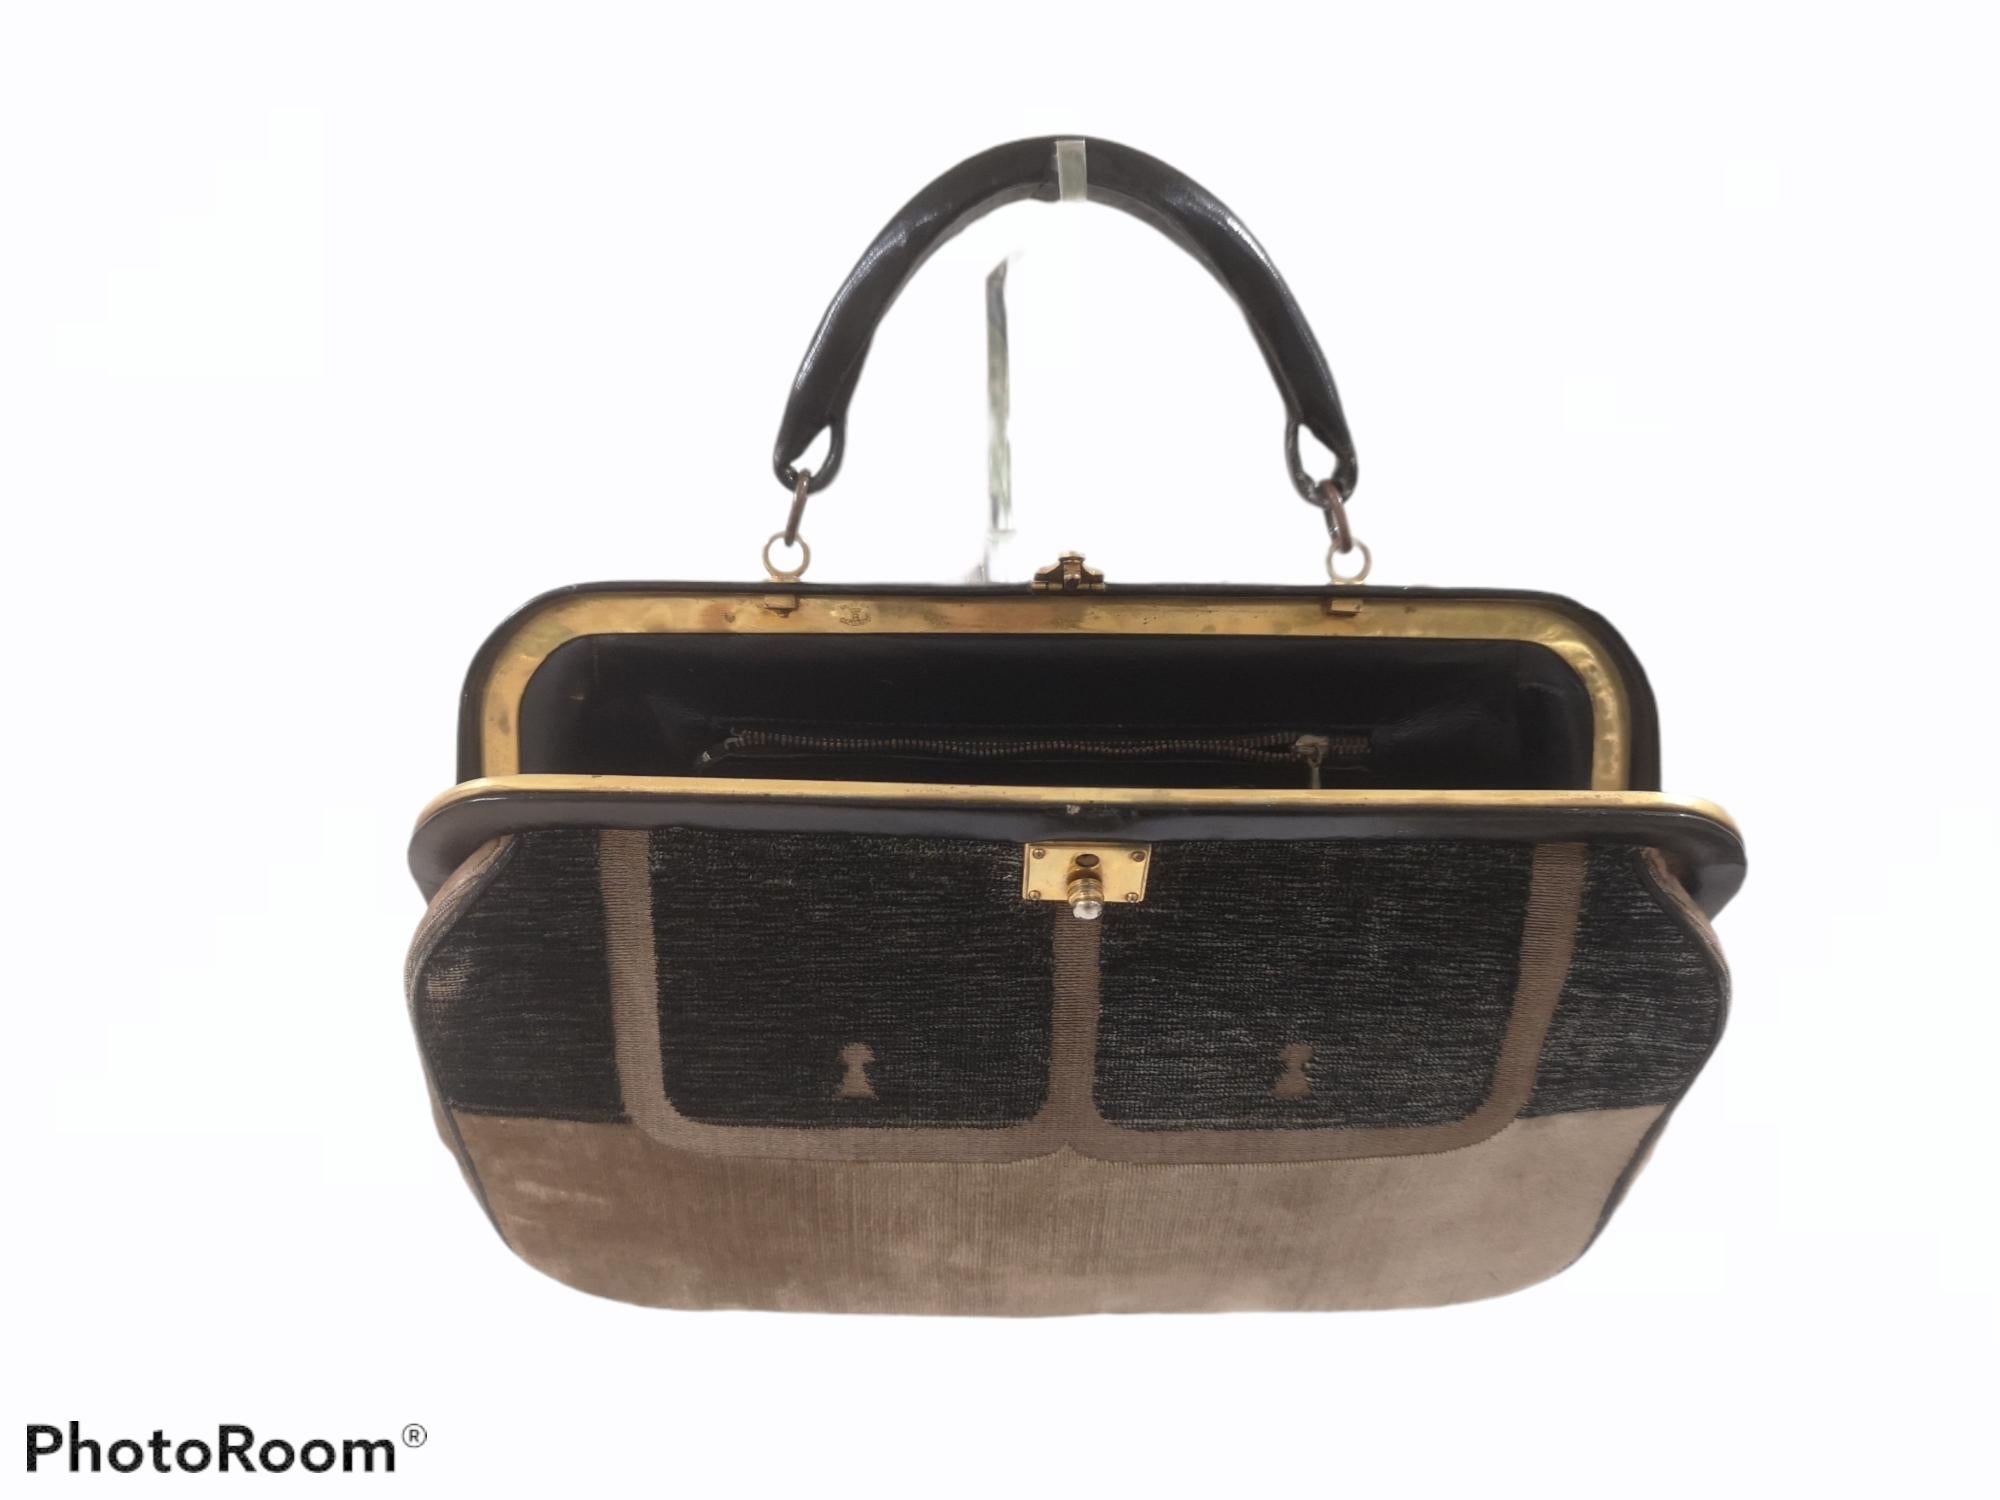 Roberta di Camerino Velvet bag
Velvet handle bag, inside leather
totally made in italy